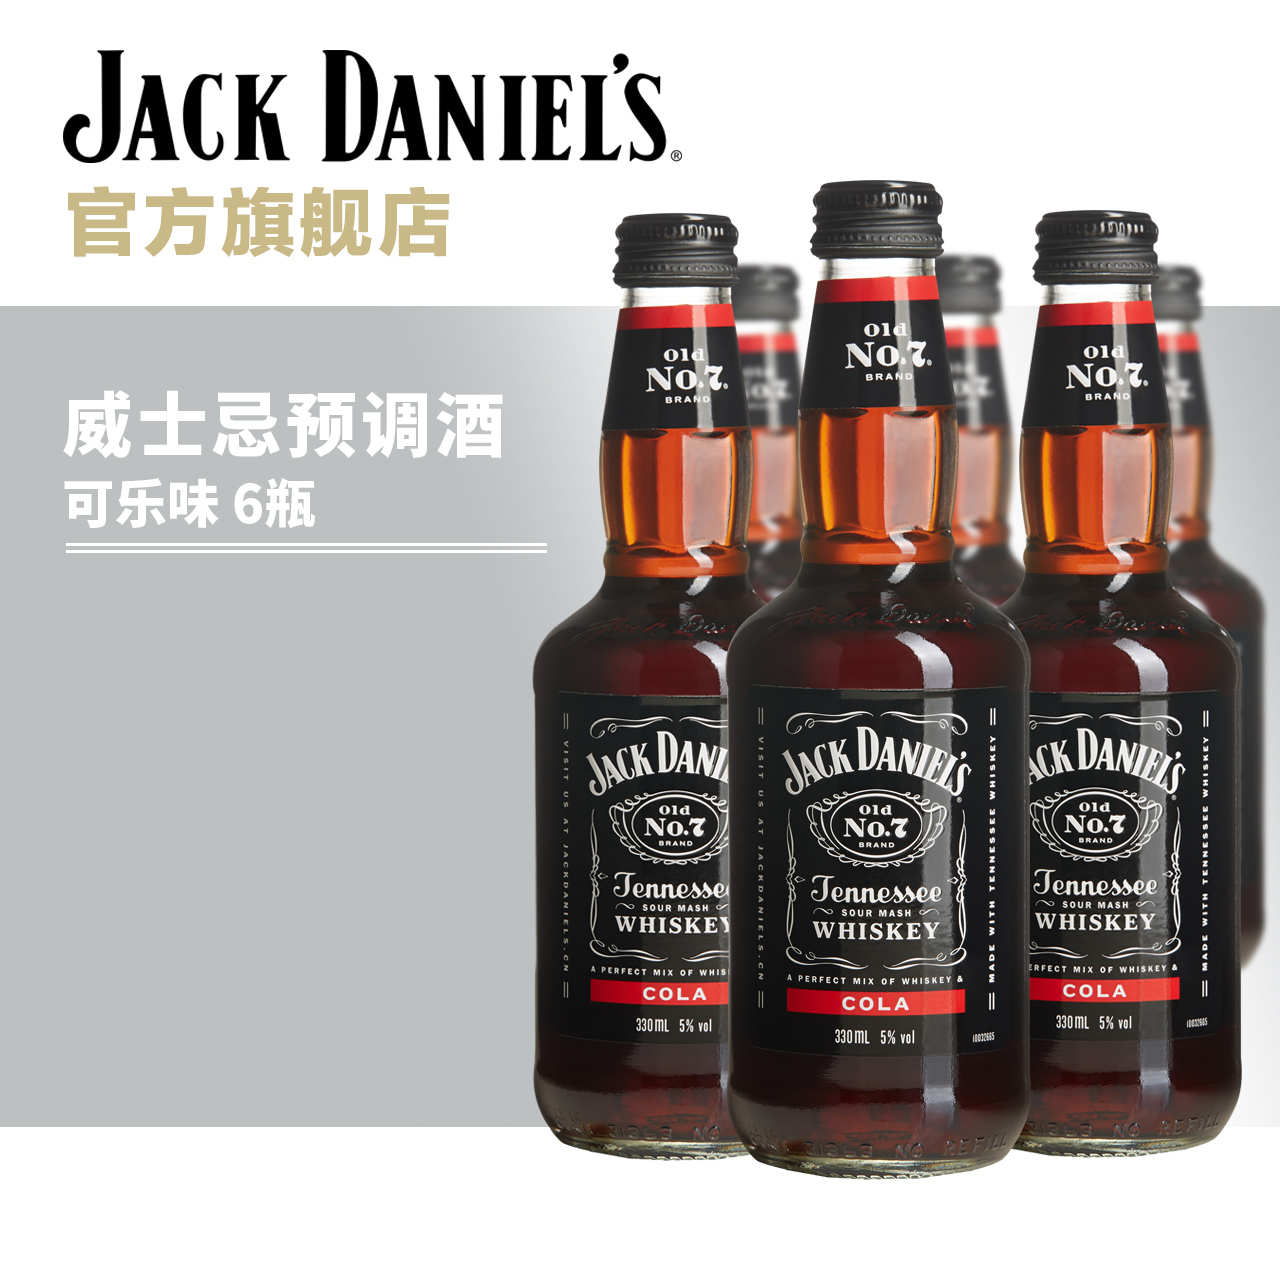 杰克丹尼威士忌预调酒-可乐味 6瓶装 官方正品预配制调制酒鸡尾酒